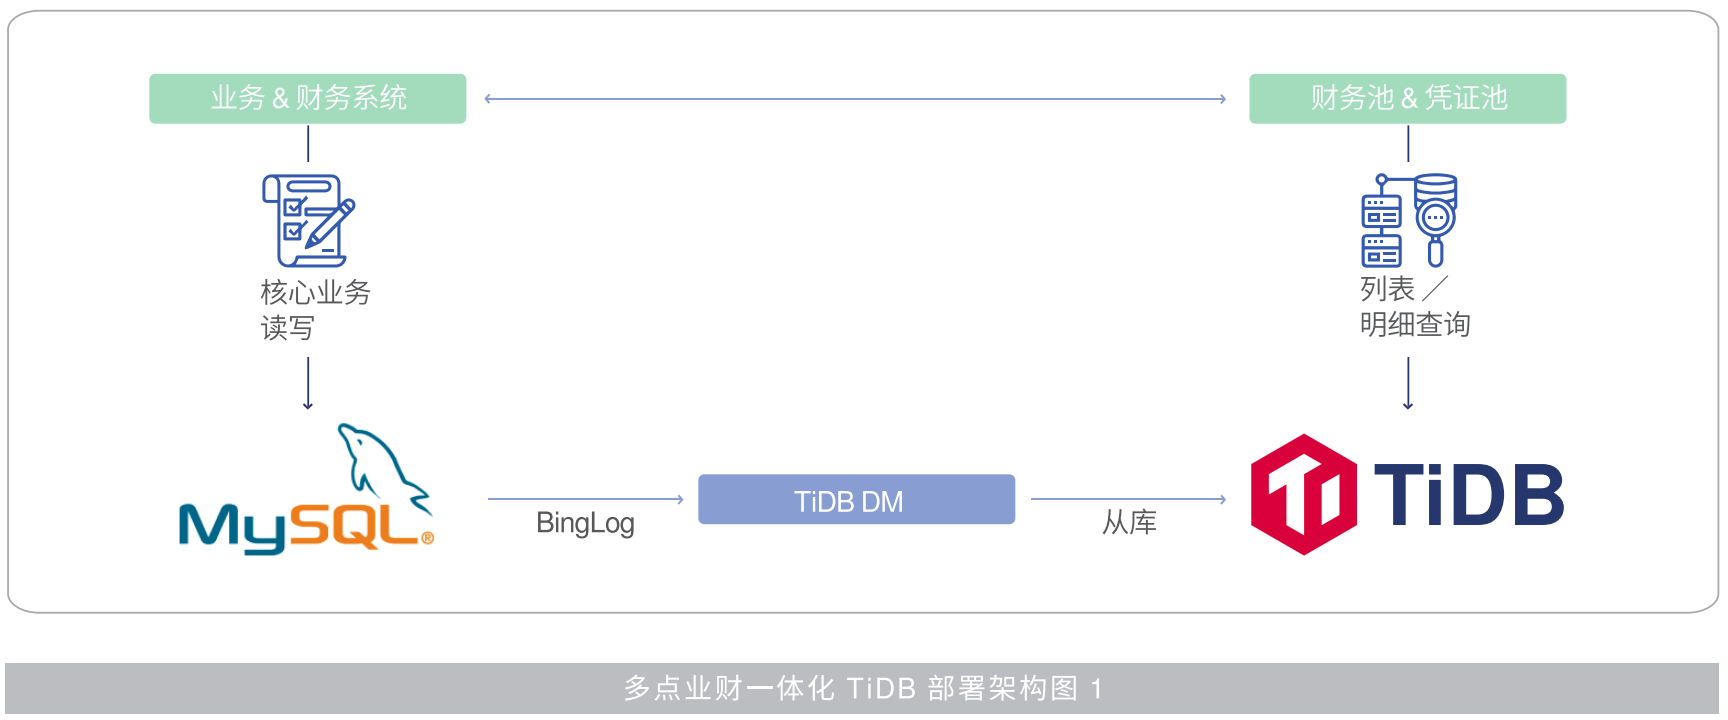 多点业财一体化TiDB架构图1.png